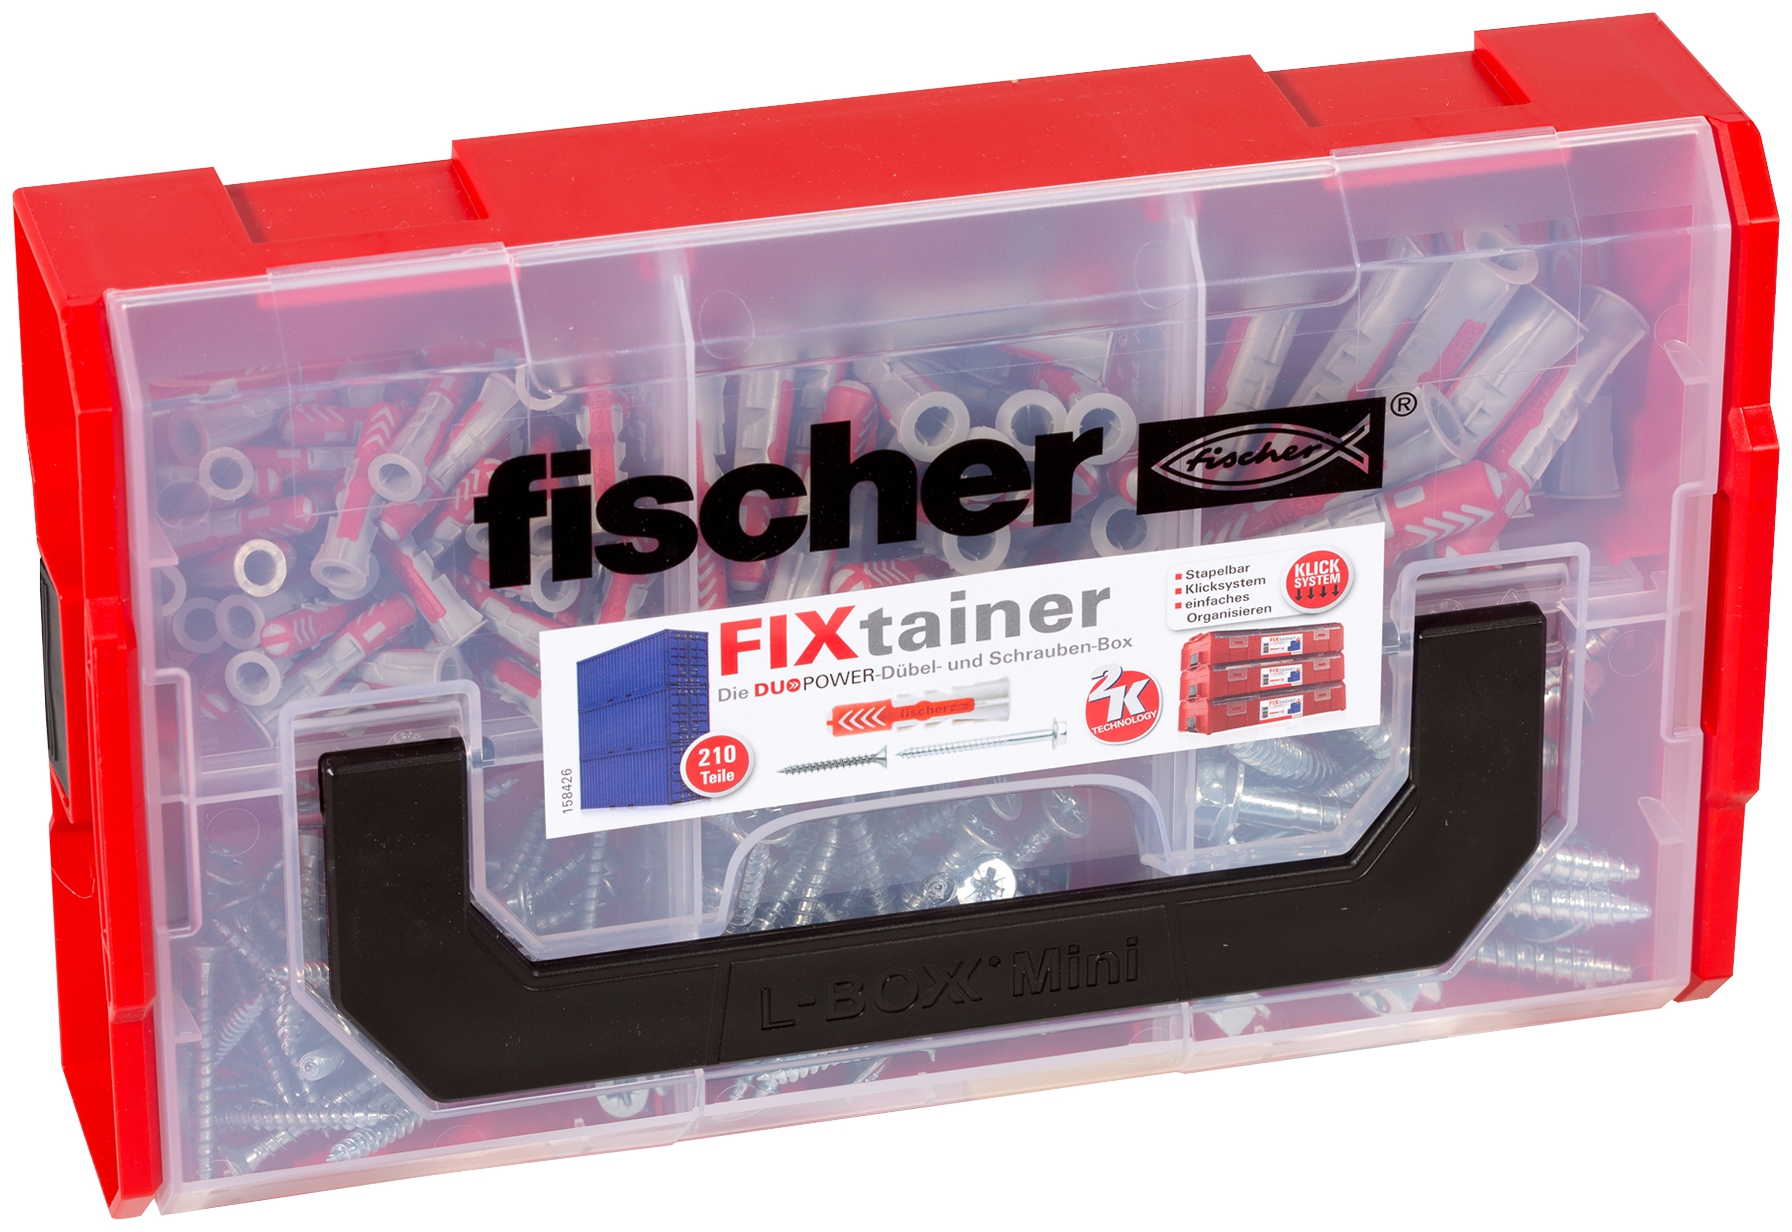 Fischer FixTainer DuoPower Dübel und Schrauben-Box. Fischer FixTainer - mit dem Duo aus Power und Schlauer